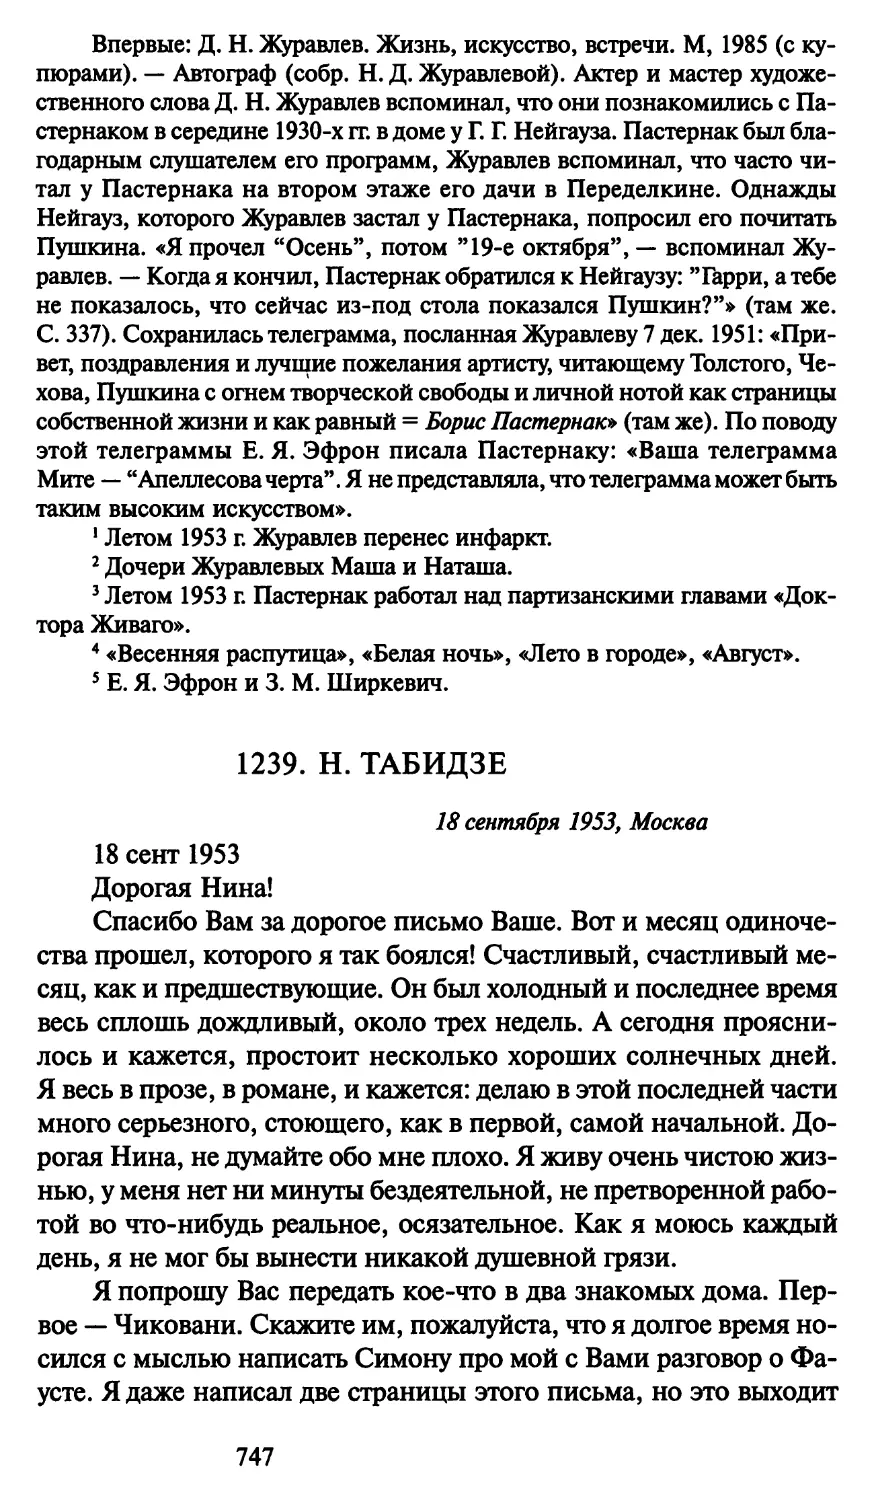 1239. Н. Табидзе 18 сентября 1953